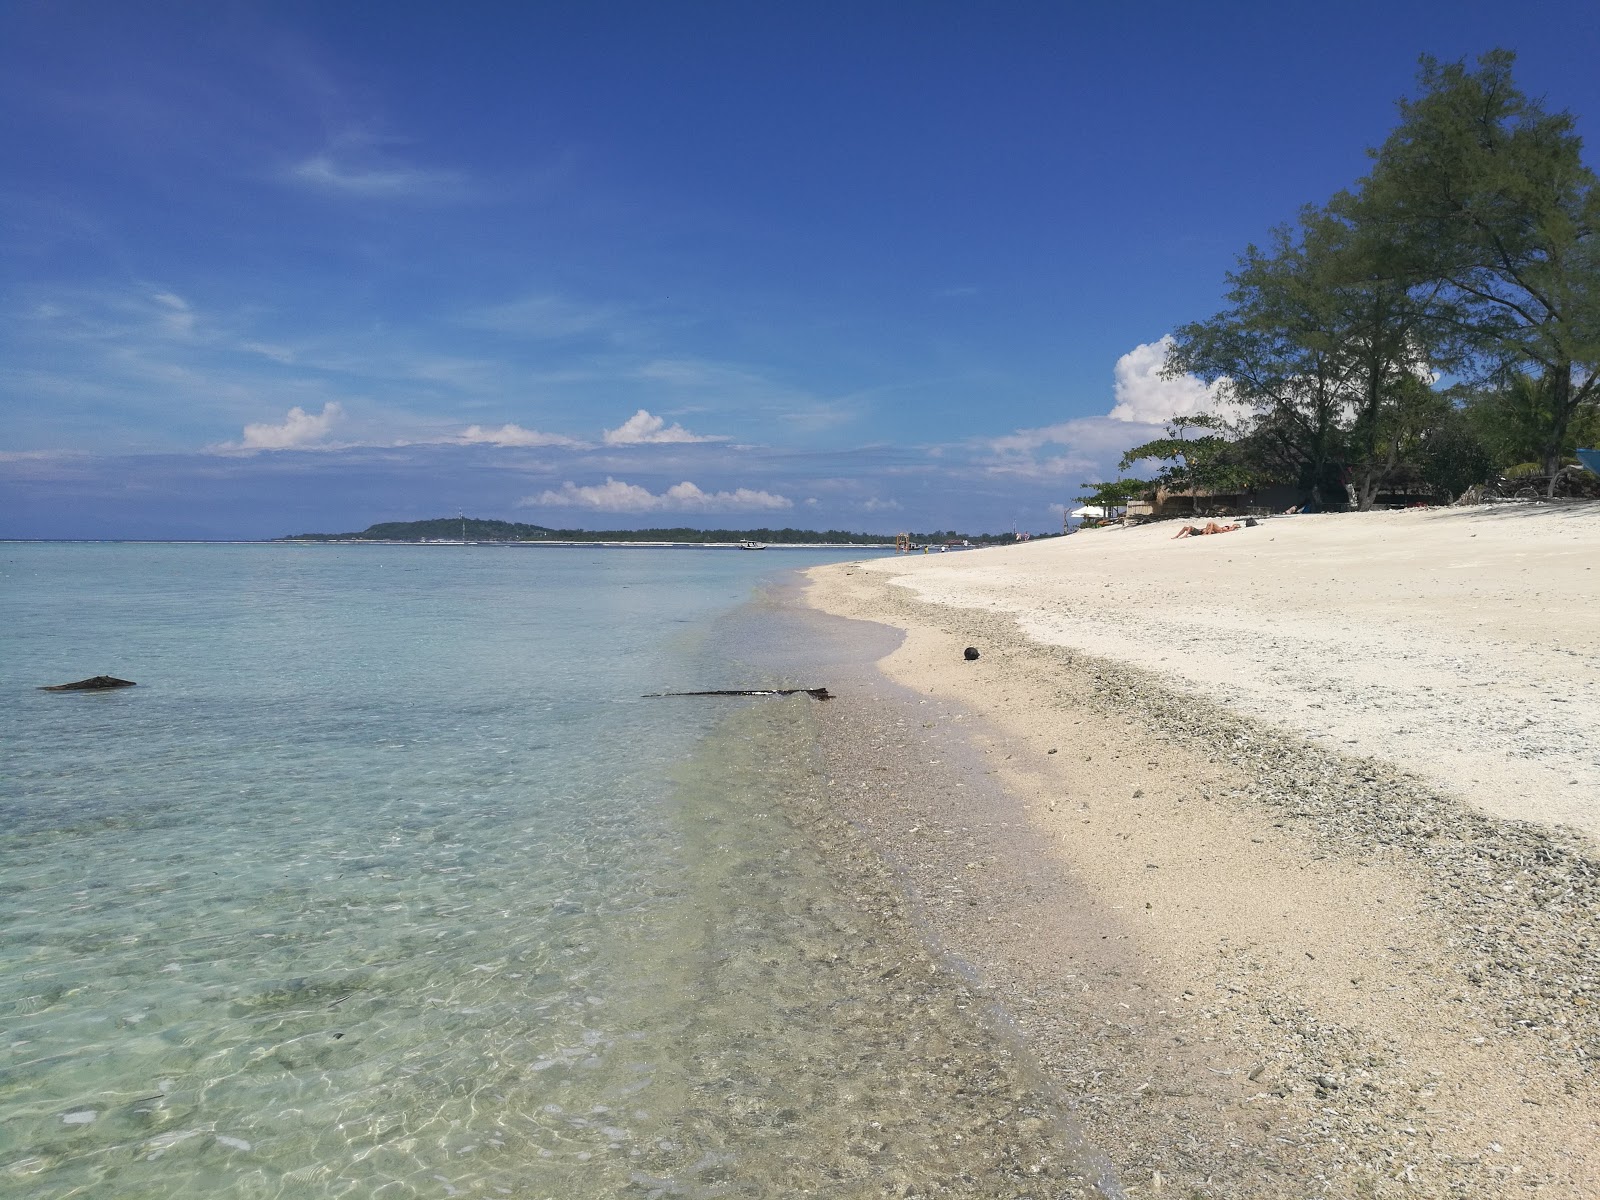 Foto af Gili Air Lumbung Beach - populært sted blandt afslapningskendere